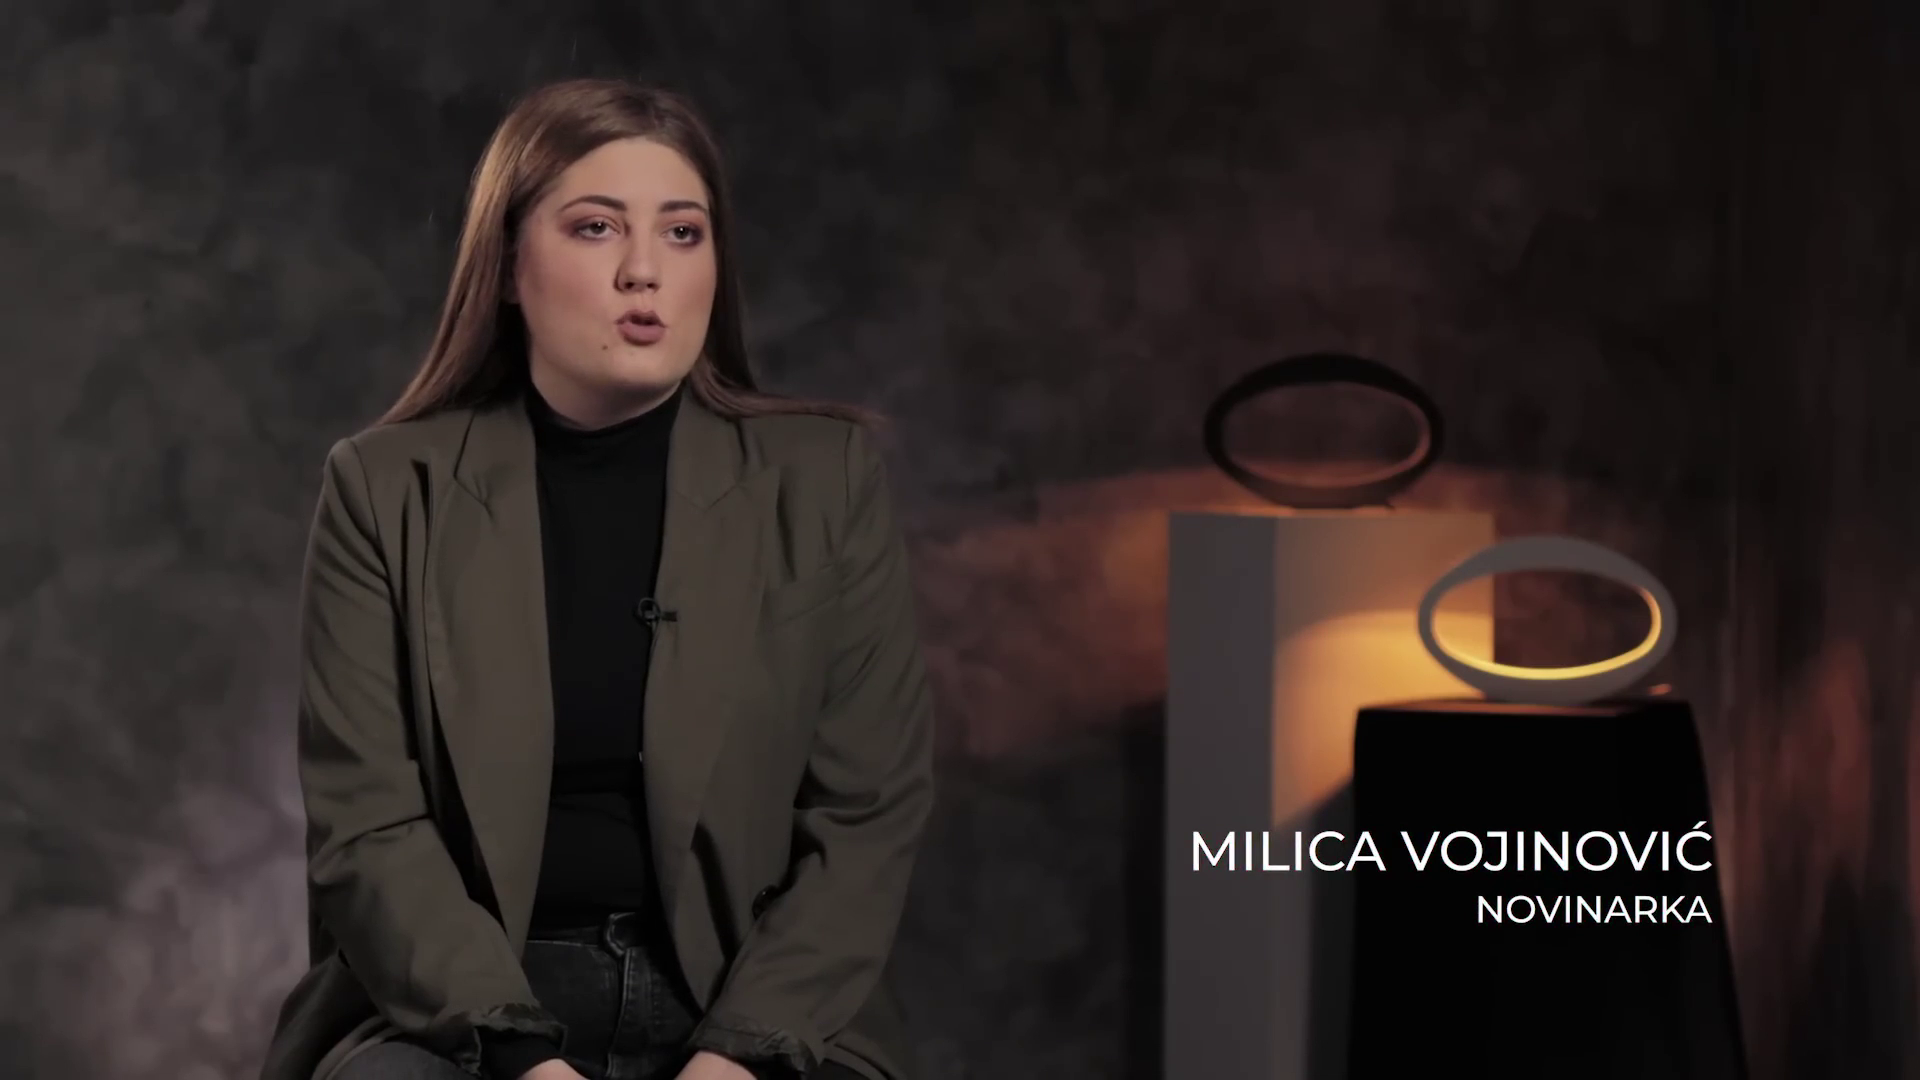 Milica Vojinović